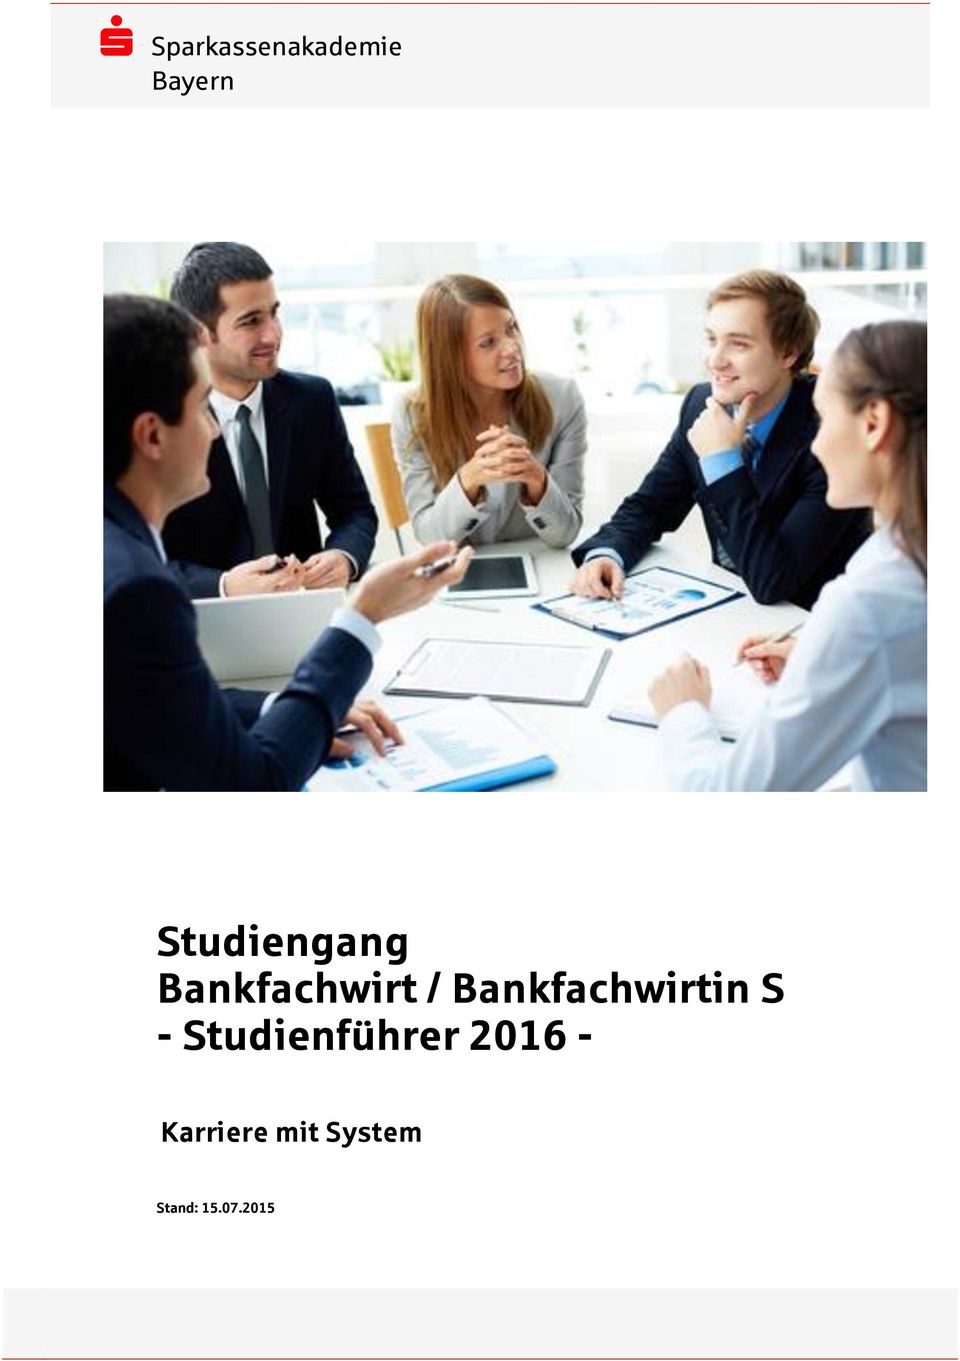 Bankfachwirtin S - Studienführer